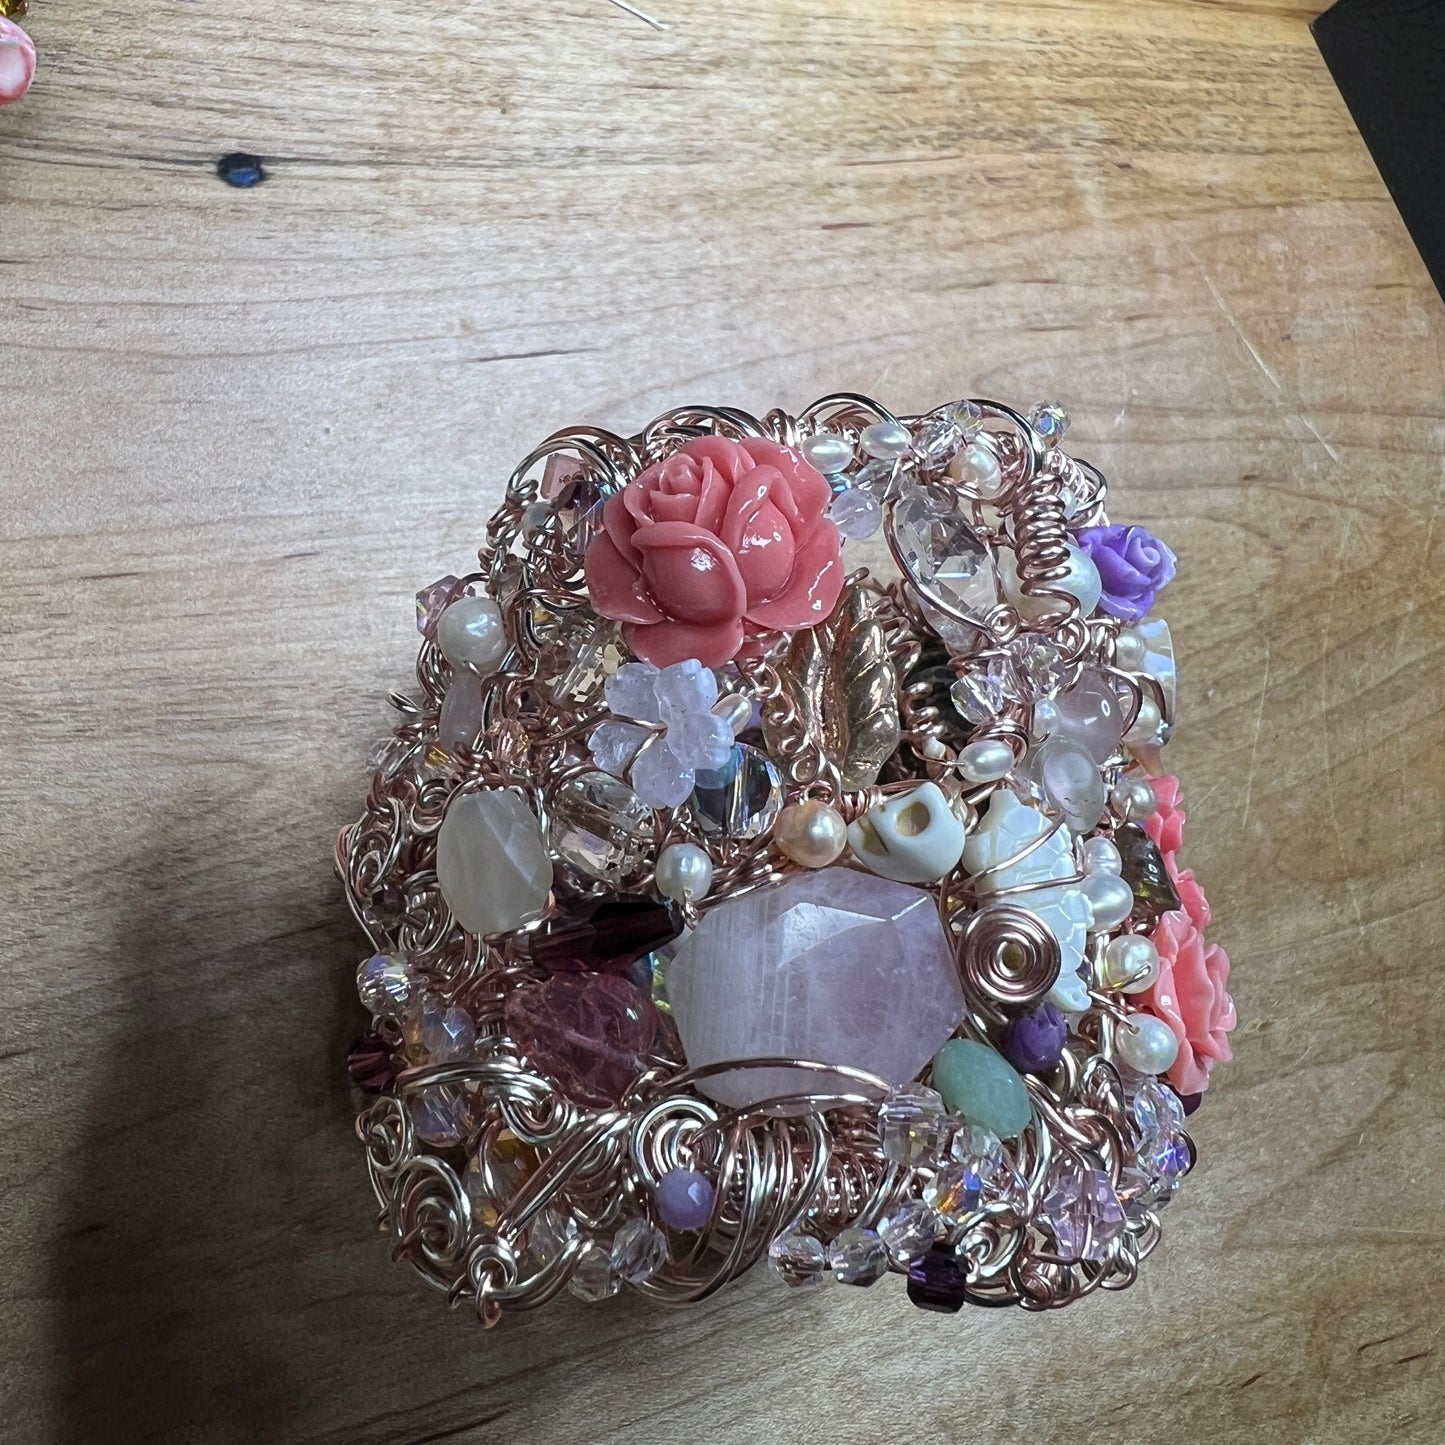 Mermaid Crown cuff bracelet